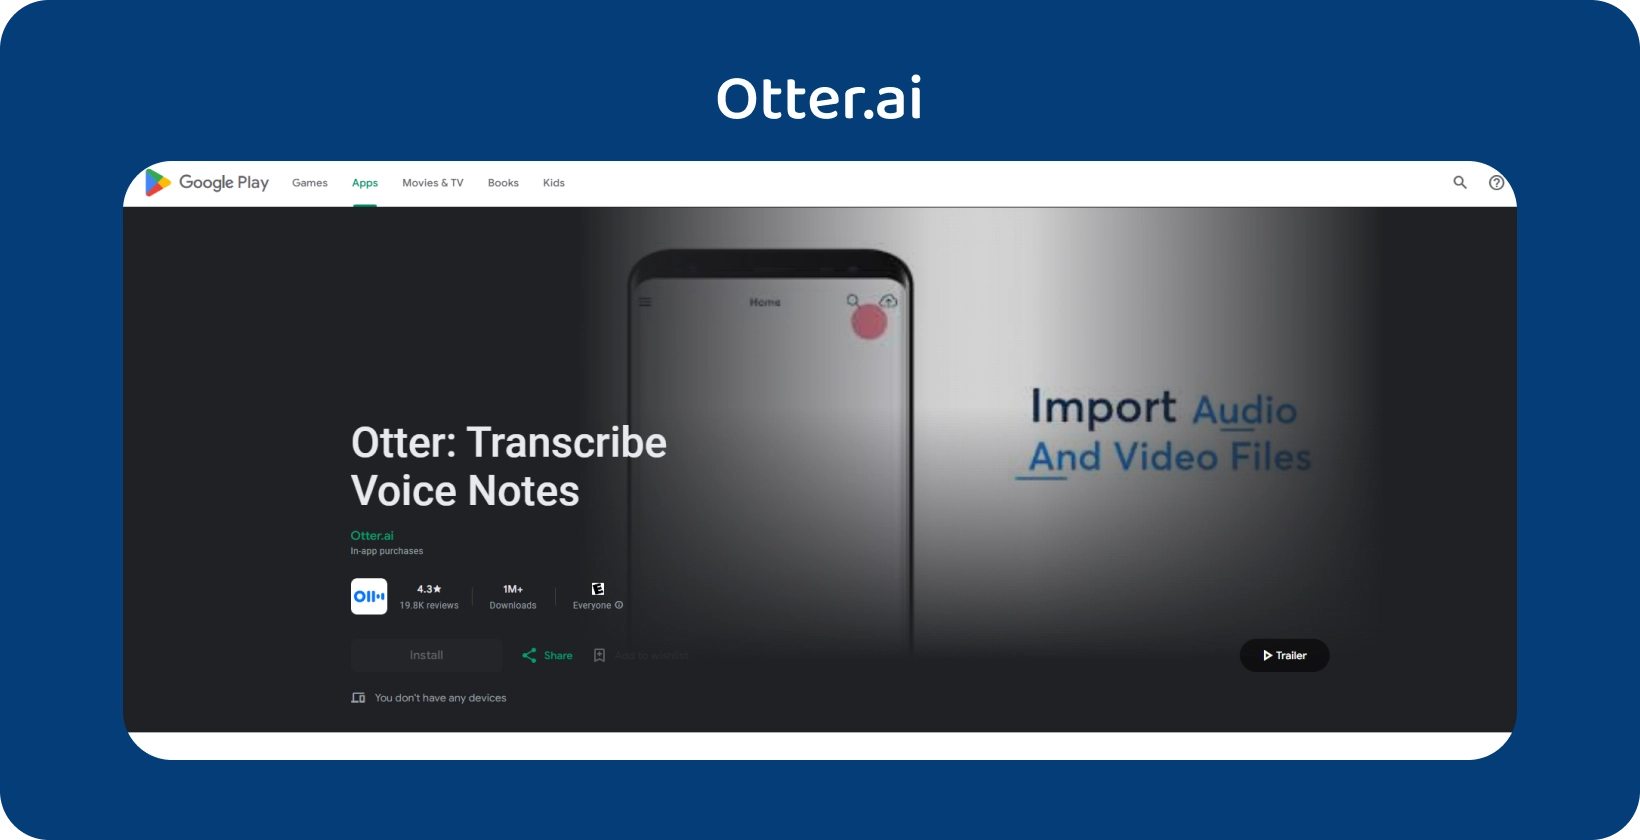 Otter.ai aplikaciju na Google Play, s mogućnostima transkripcije glasovnih bilješki i uvoza audio/videodatoteka.